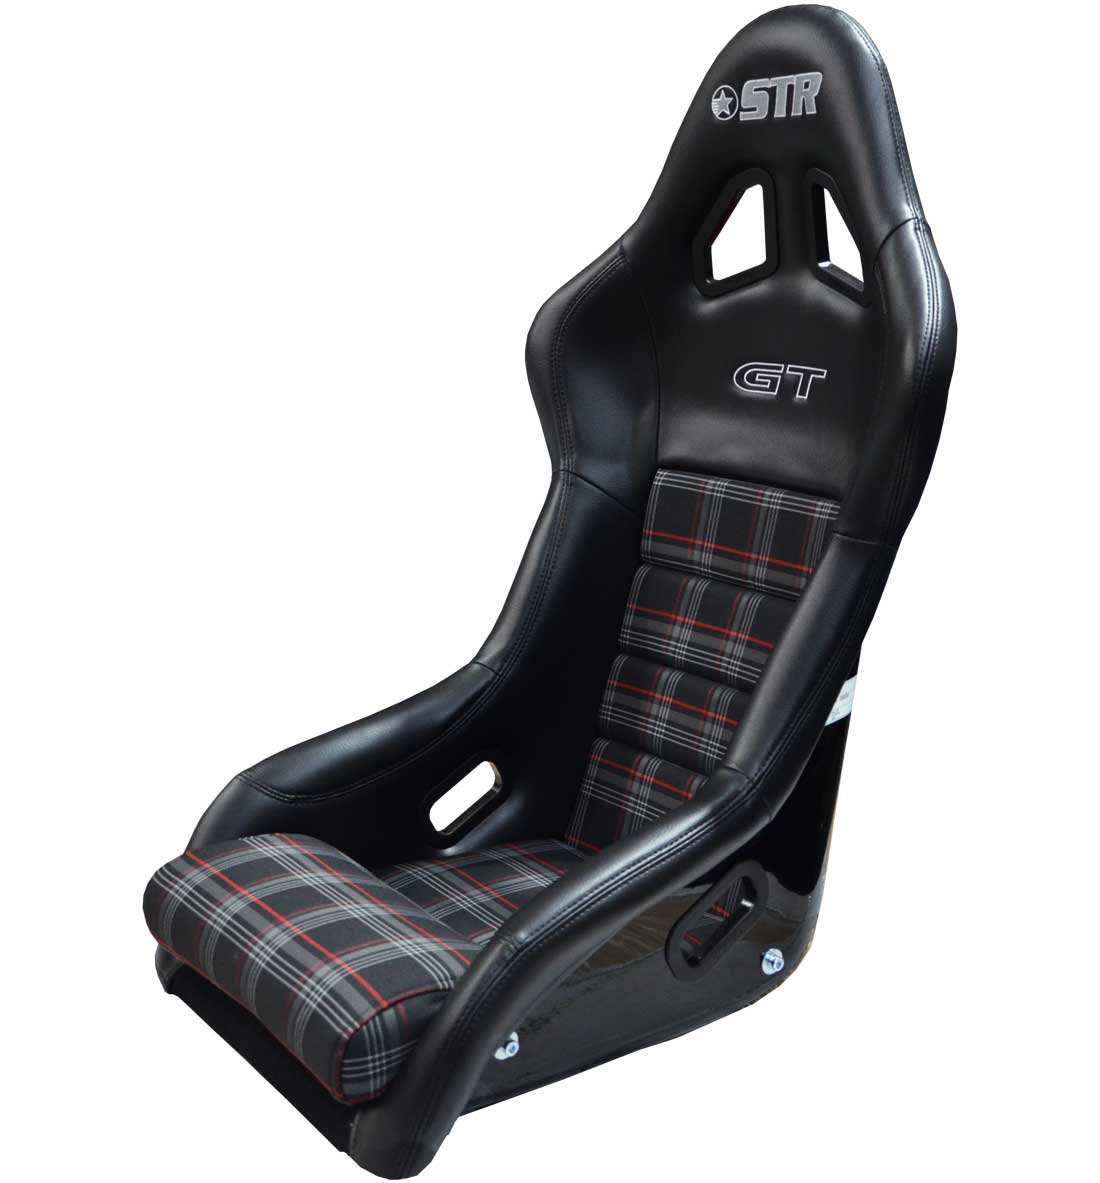 STR 'GT' FIA Approved Race Seat - 2028 VW Tartan Red